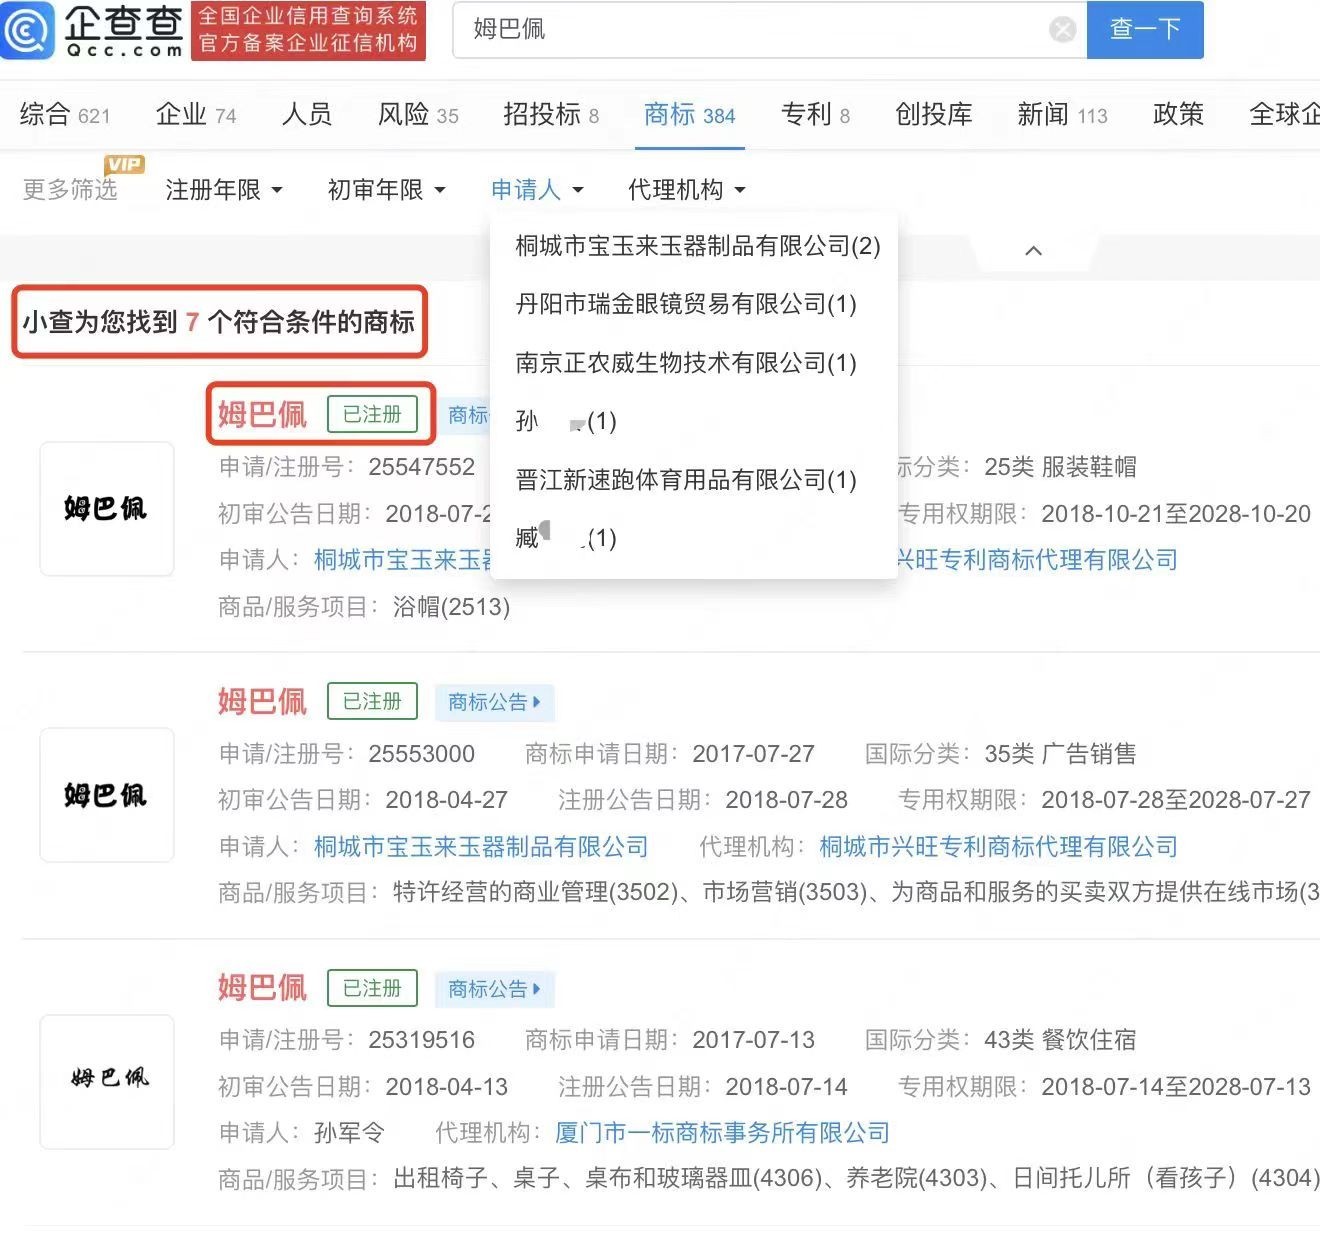 姆巴佩商标在中国被申请173条，其中7条已获批